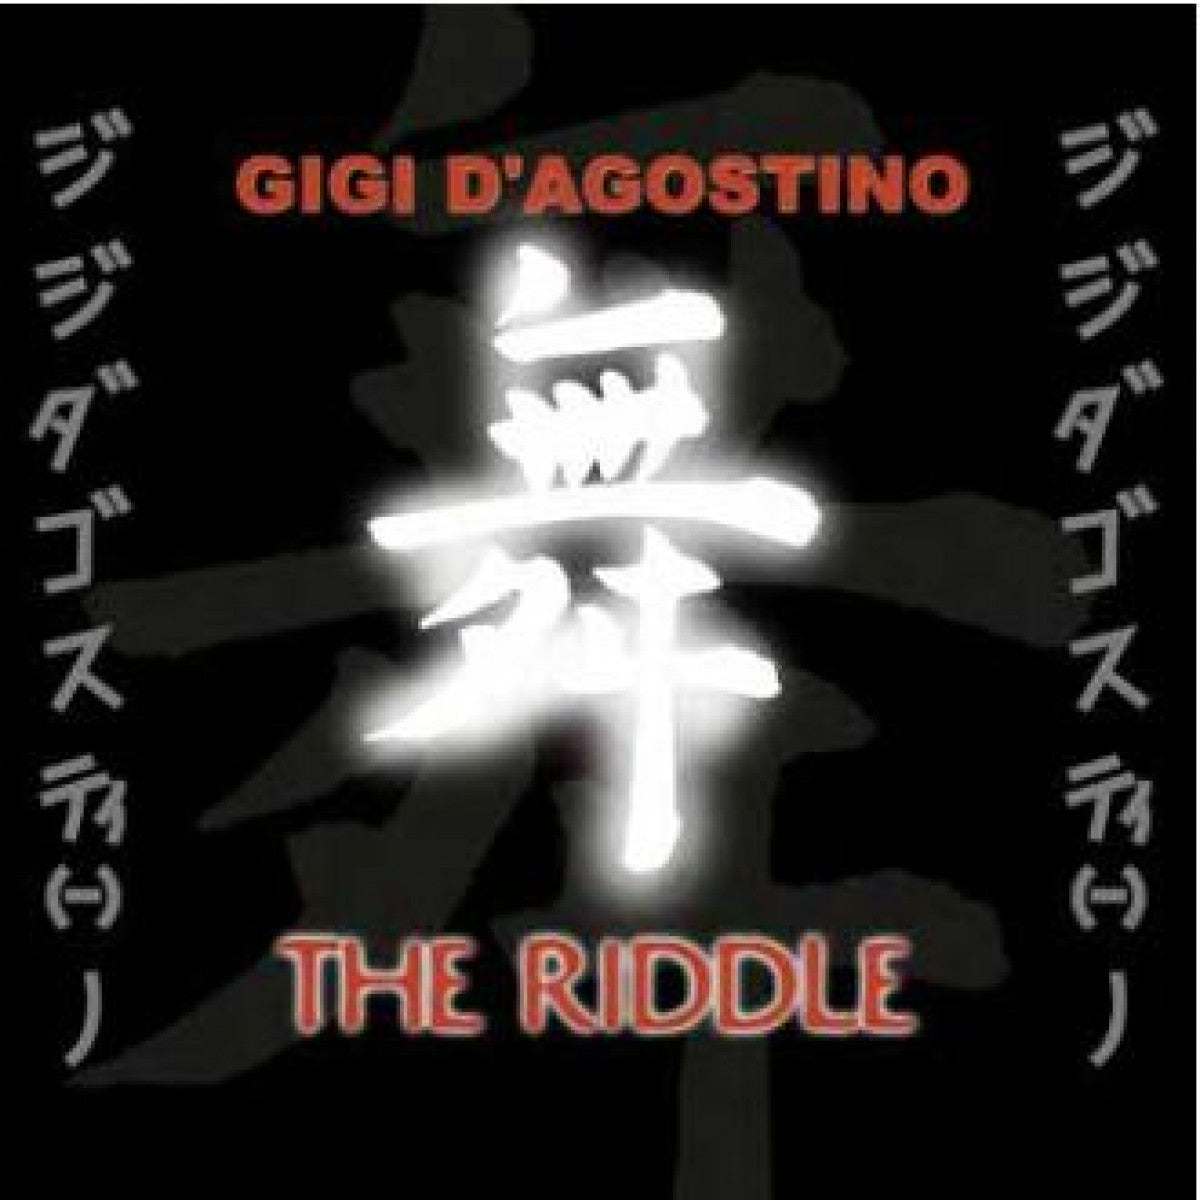 Gigi D’Agostino - The Riddle